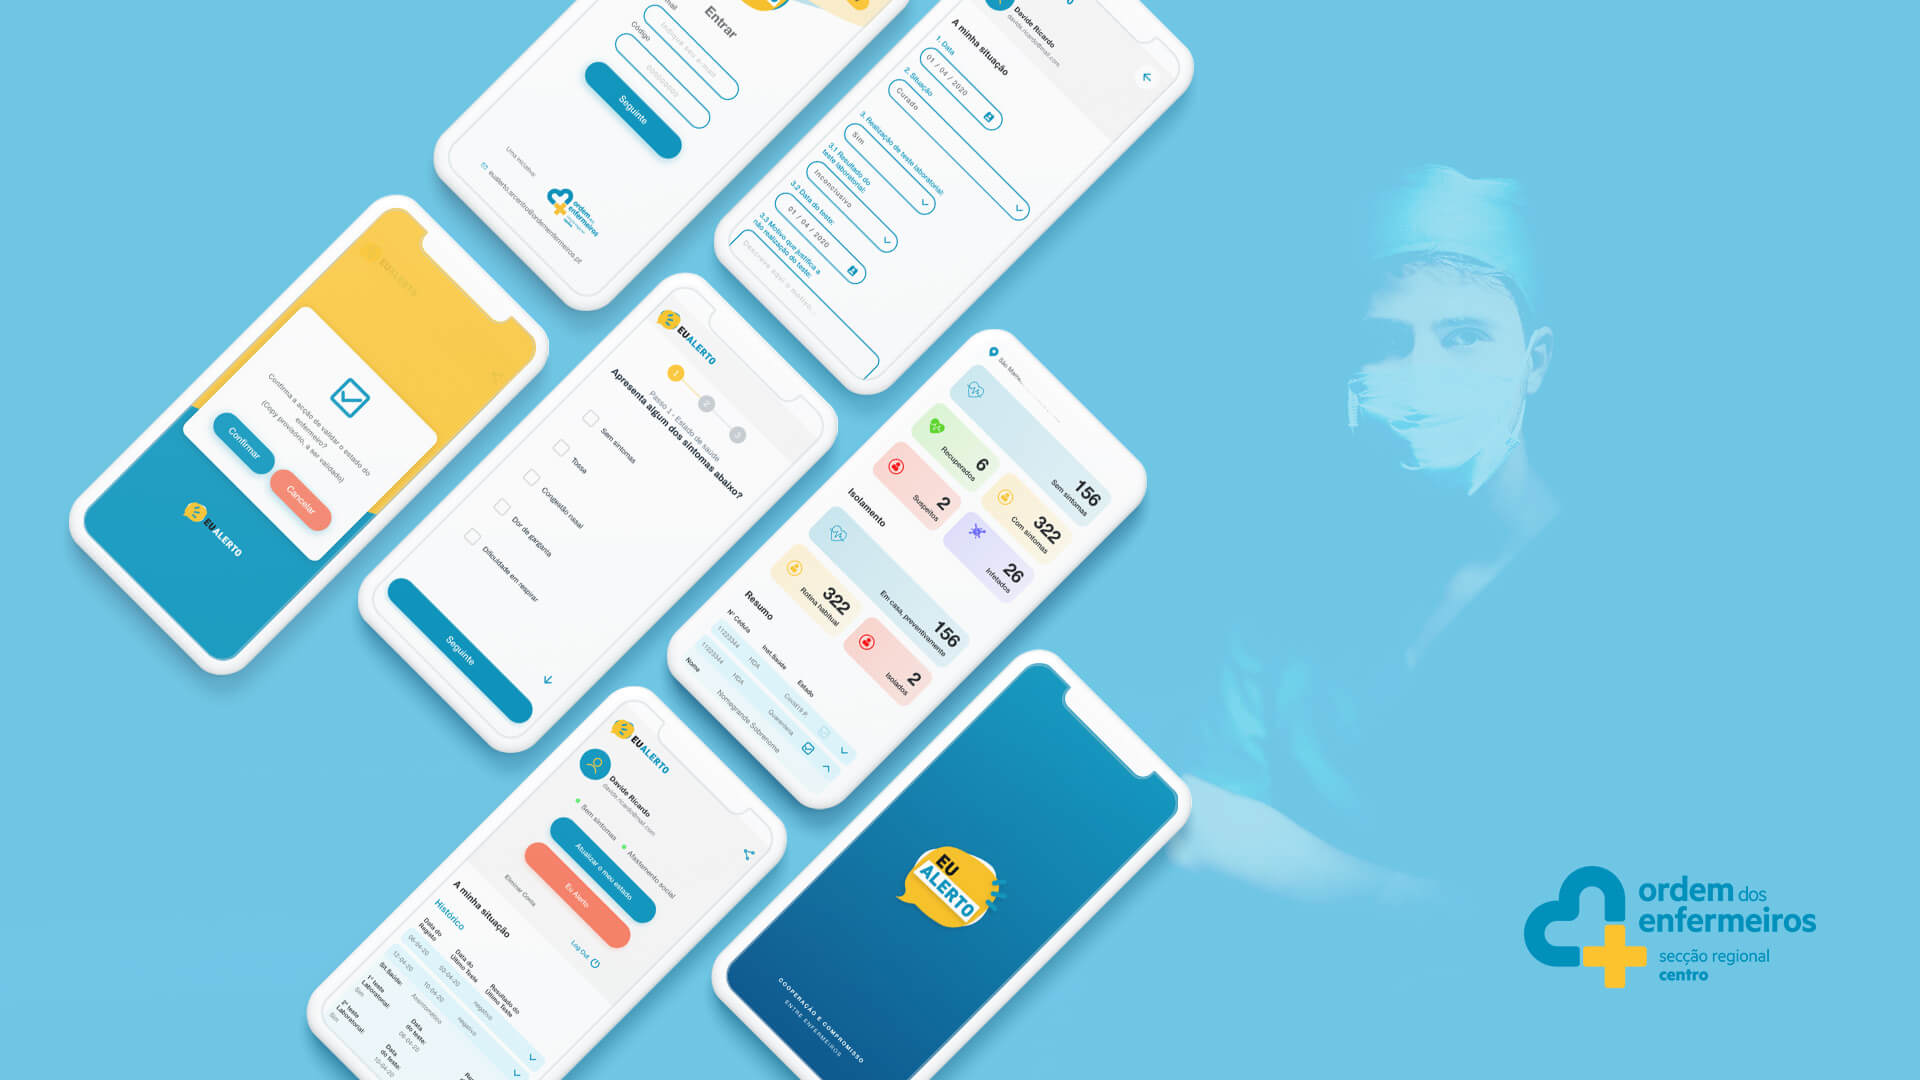 load mobile mockup of eu alerto app for ordem dos enfermeiros